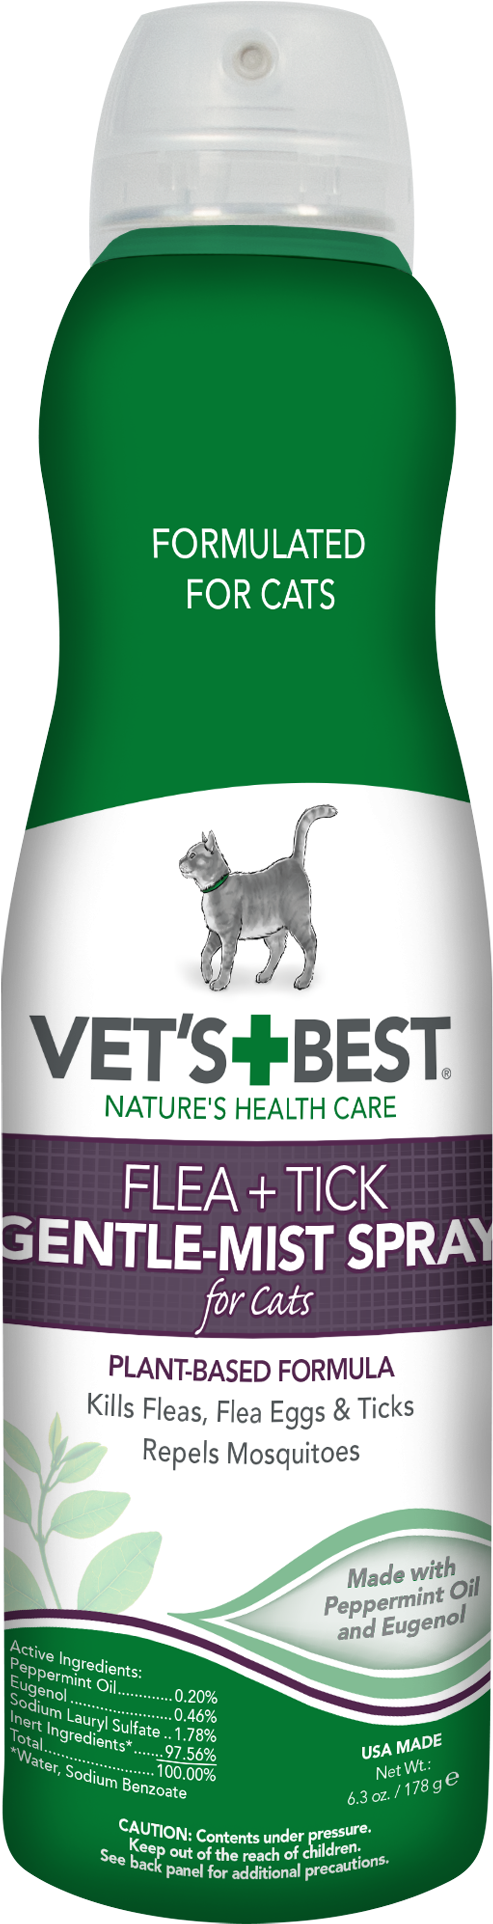 Vet's Best Flea And Tick Gentle-mist Spray For Cats, - Vet's Best Flea And Tick Spray For Cats, Hd Png Download